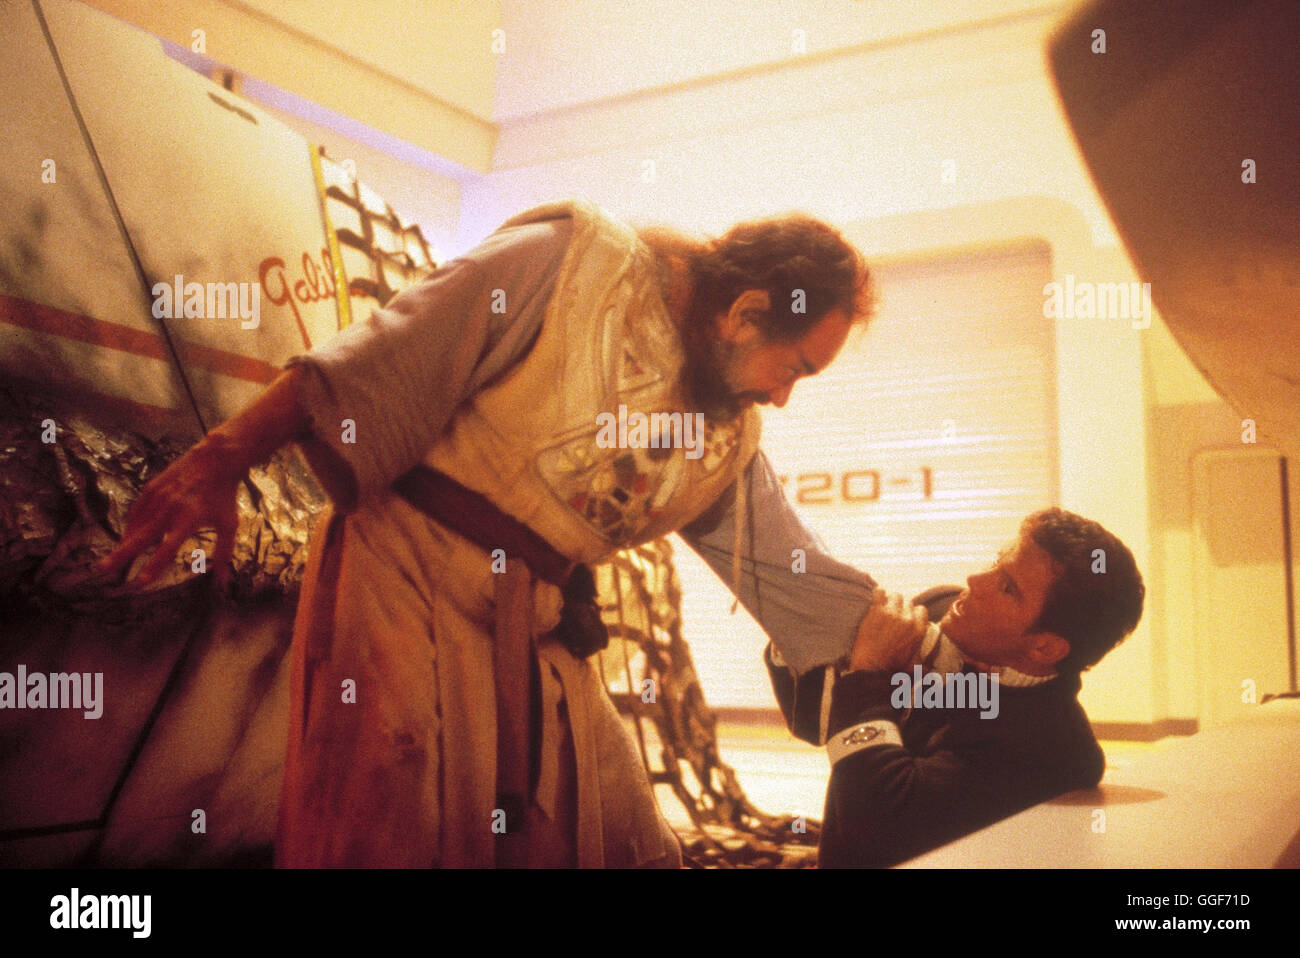 STAR TREK V - AM RANDE DES UNIVERSUMS / Star Trek V - The Final Frontier USA 1989 / William Shatner LAURENCE LUCKINBILL (Sybok), WILLIAM SHATNER (Kirk) in 'Star Trek V - Am Rande des Universums', 1989. Regie: William Shatner aka. Star Trek V - The Final Frontier Stock Photo